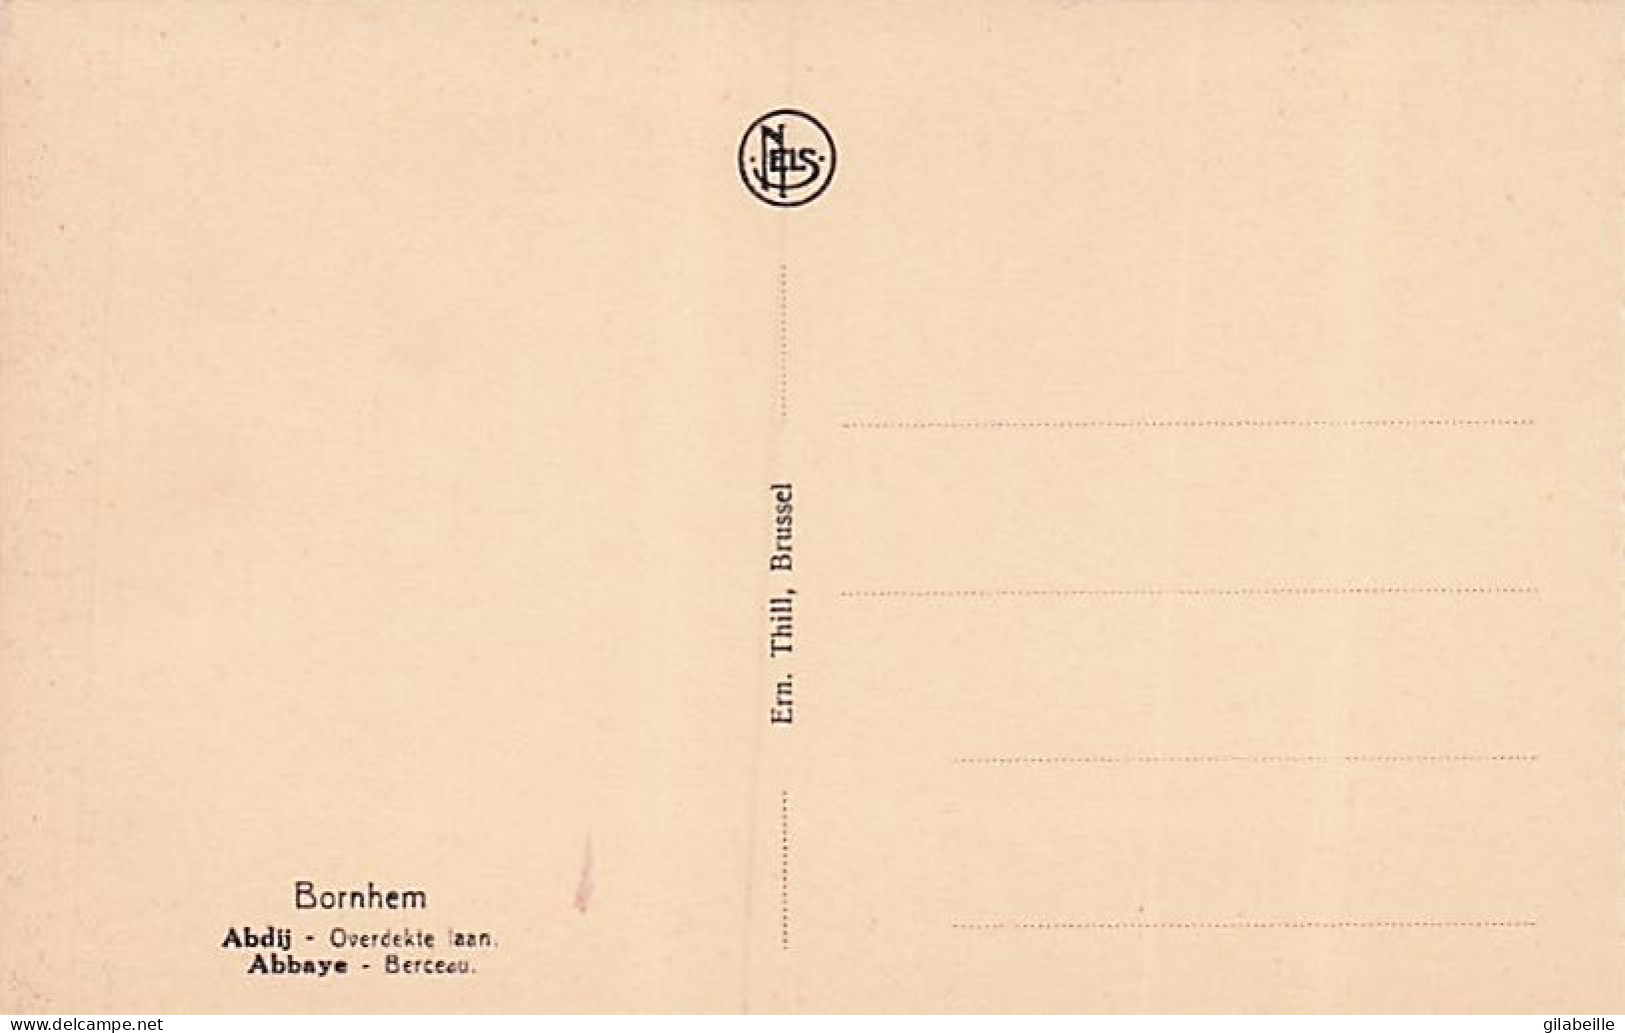 BORNEM - 18 in perfecte staat Zichtkaarten: Sint-Bernardus Abdij - BORNHEM - 